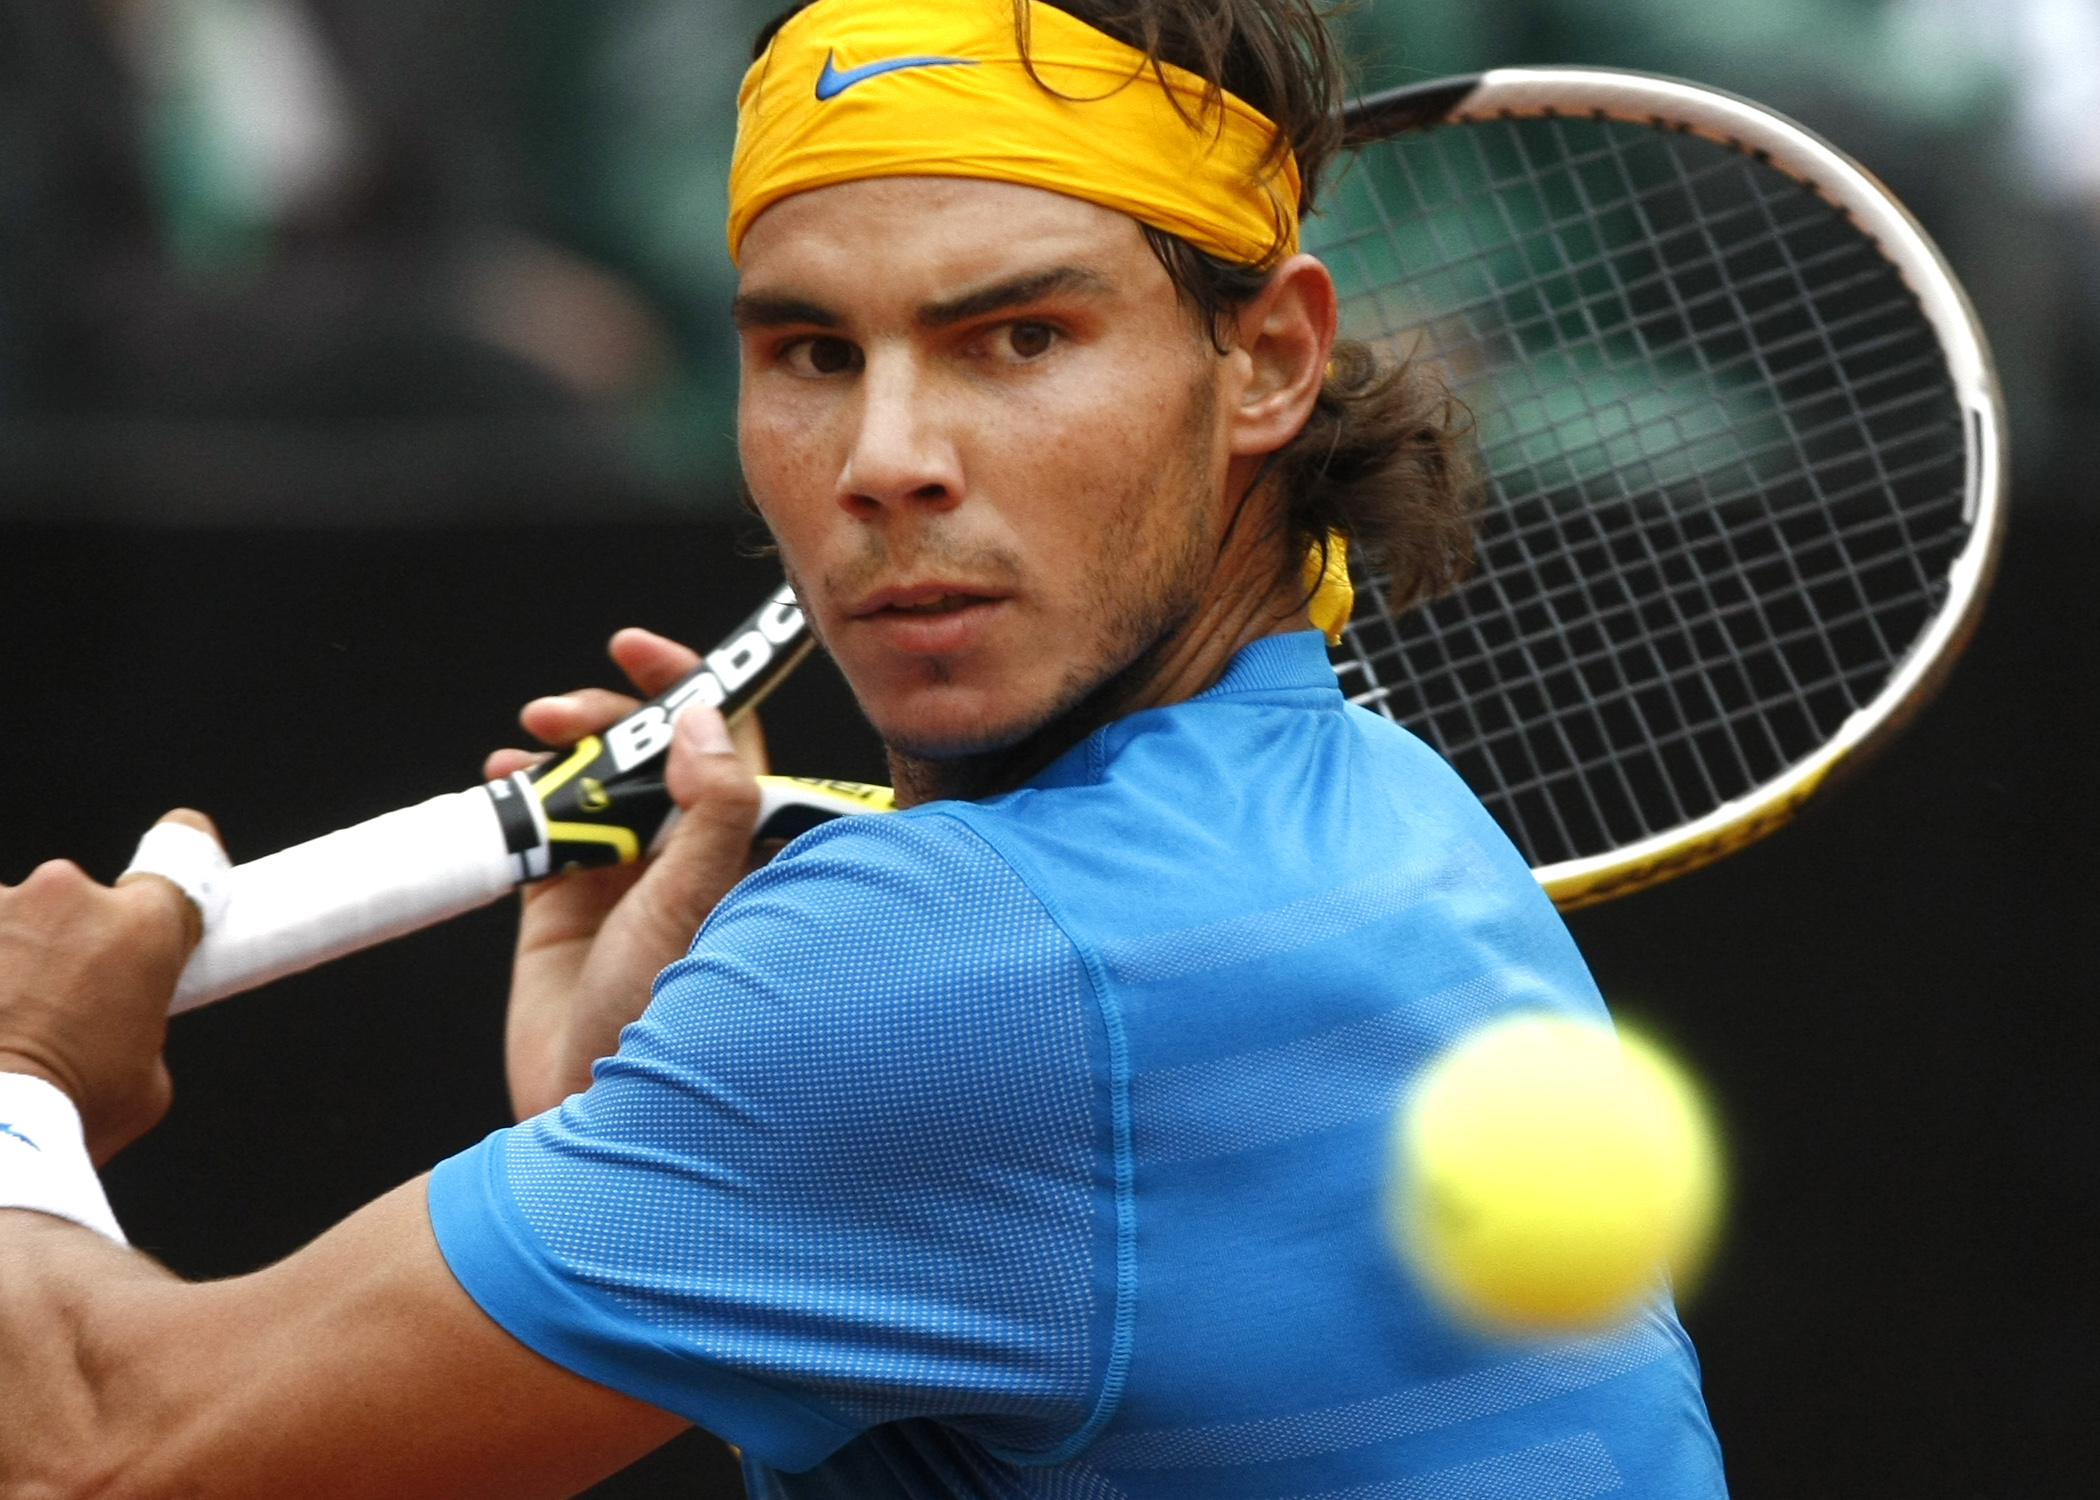 ATP, Rafael Nadal, Tennis, David Ferrer